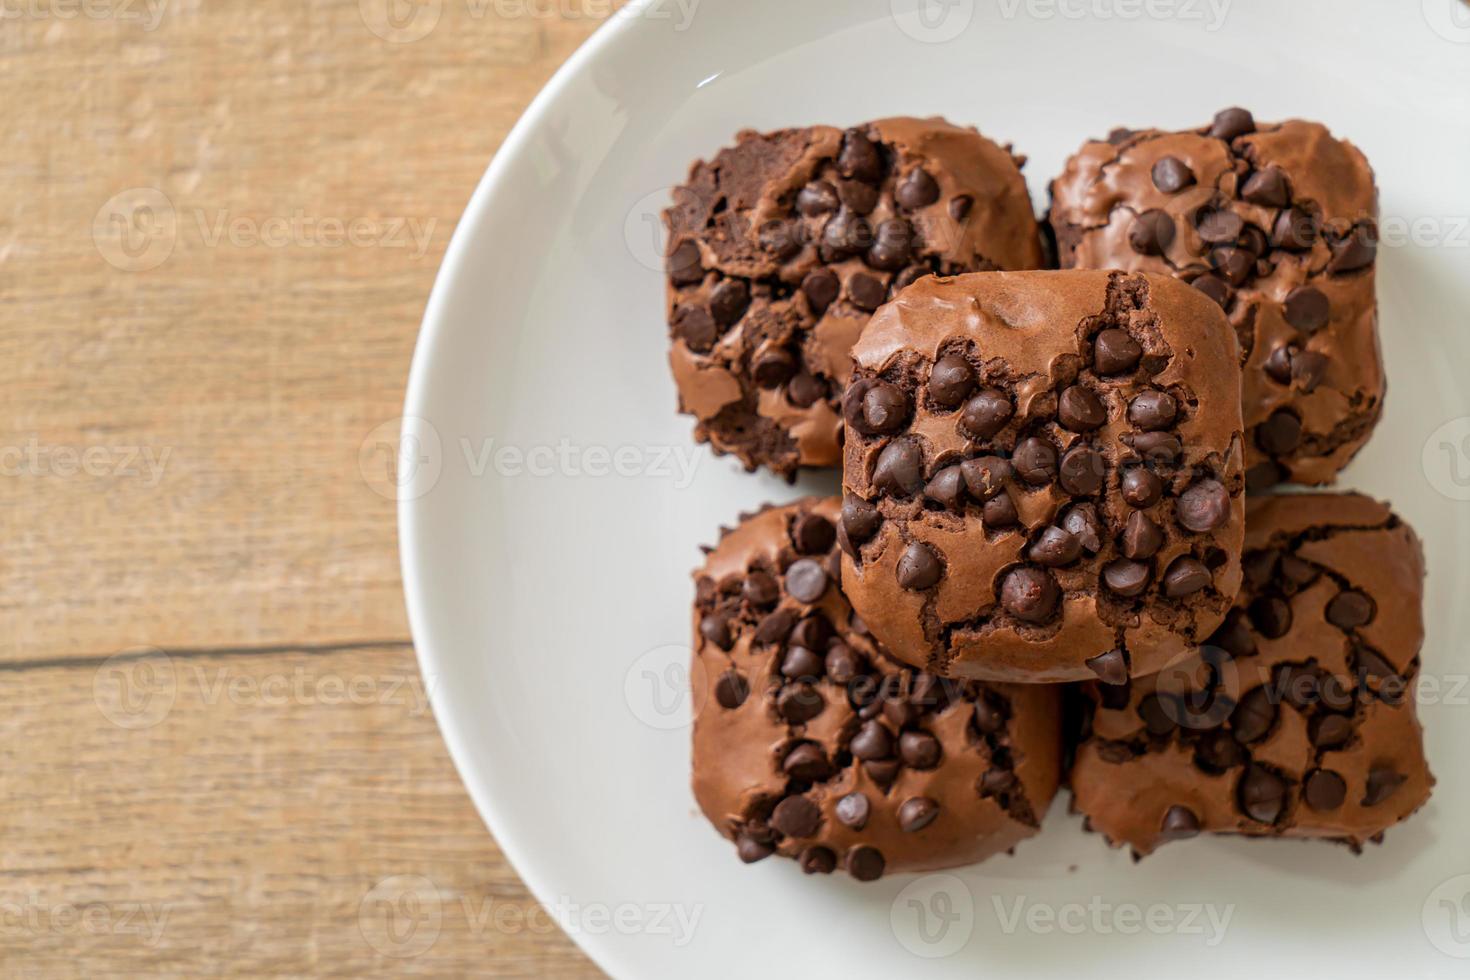 donkere chocolade brownies met chocoladeschilfers erop foto